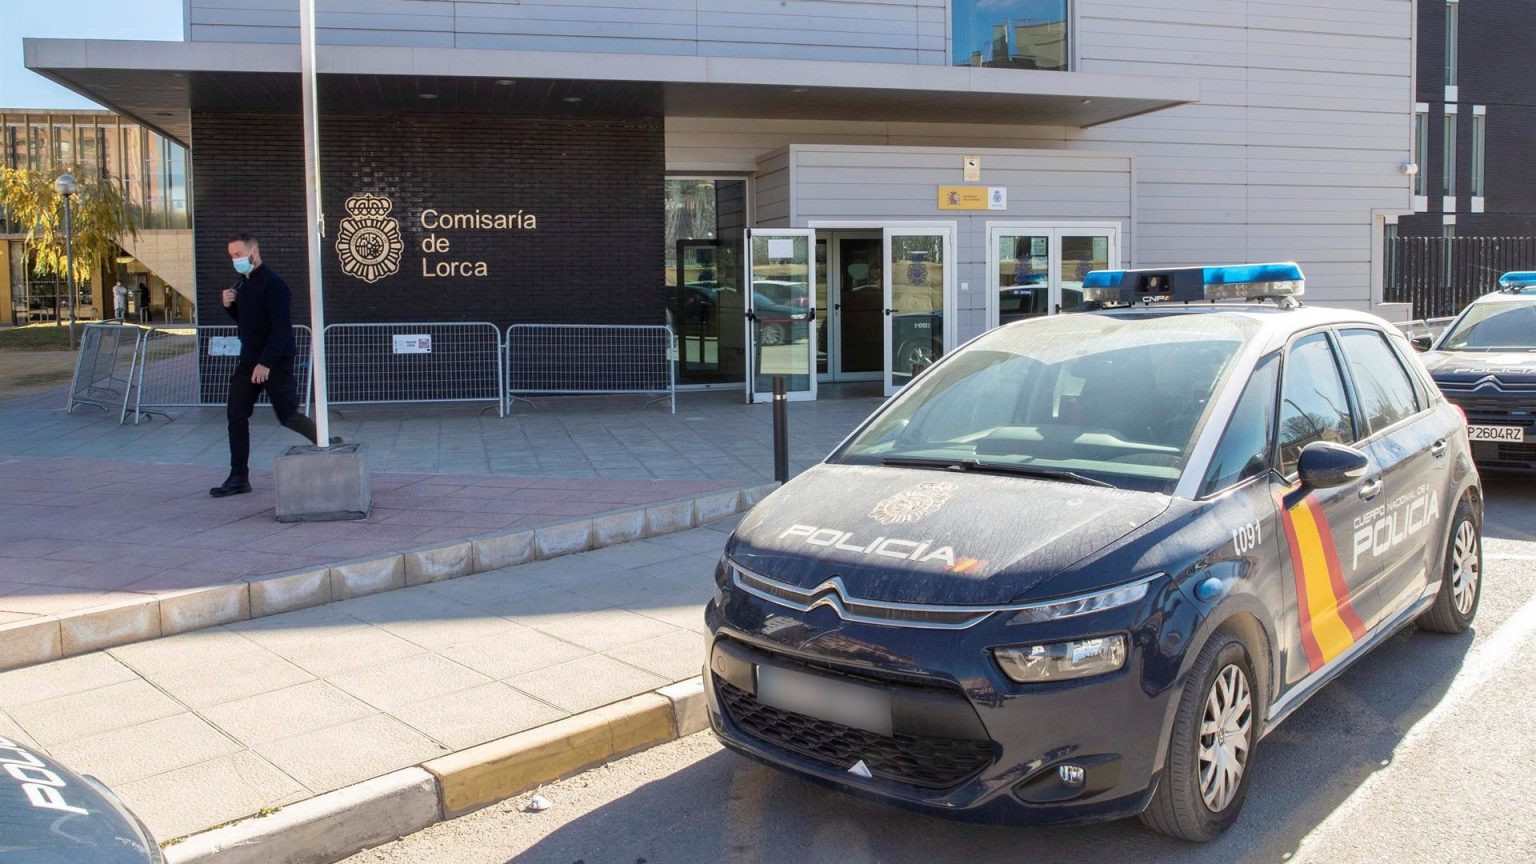 Las autoridades de Lorca prevén nuevas detenciones a lo largo de la jornada